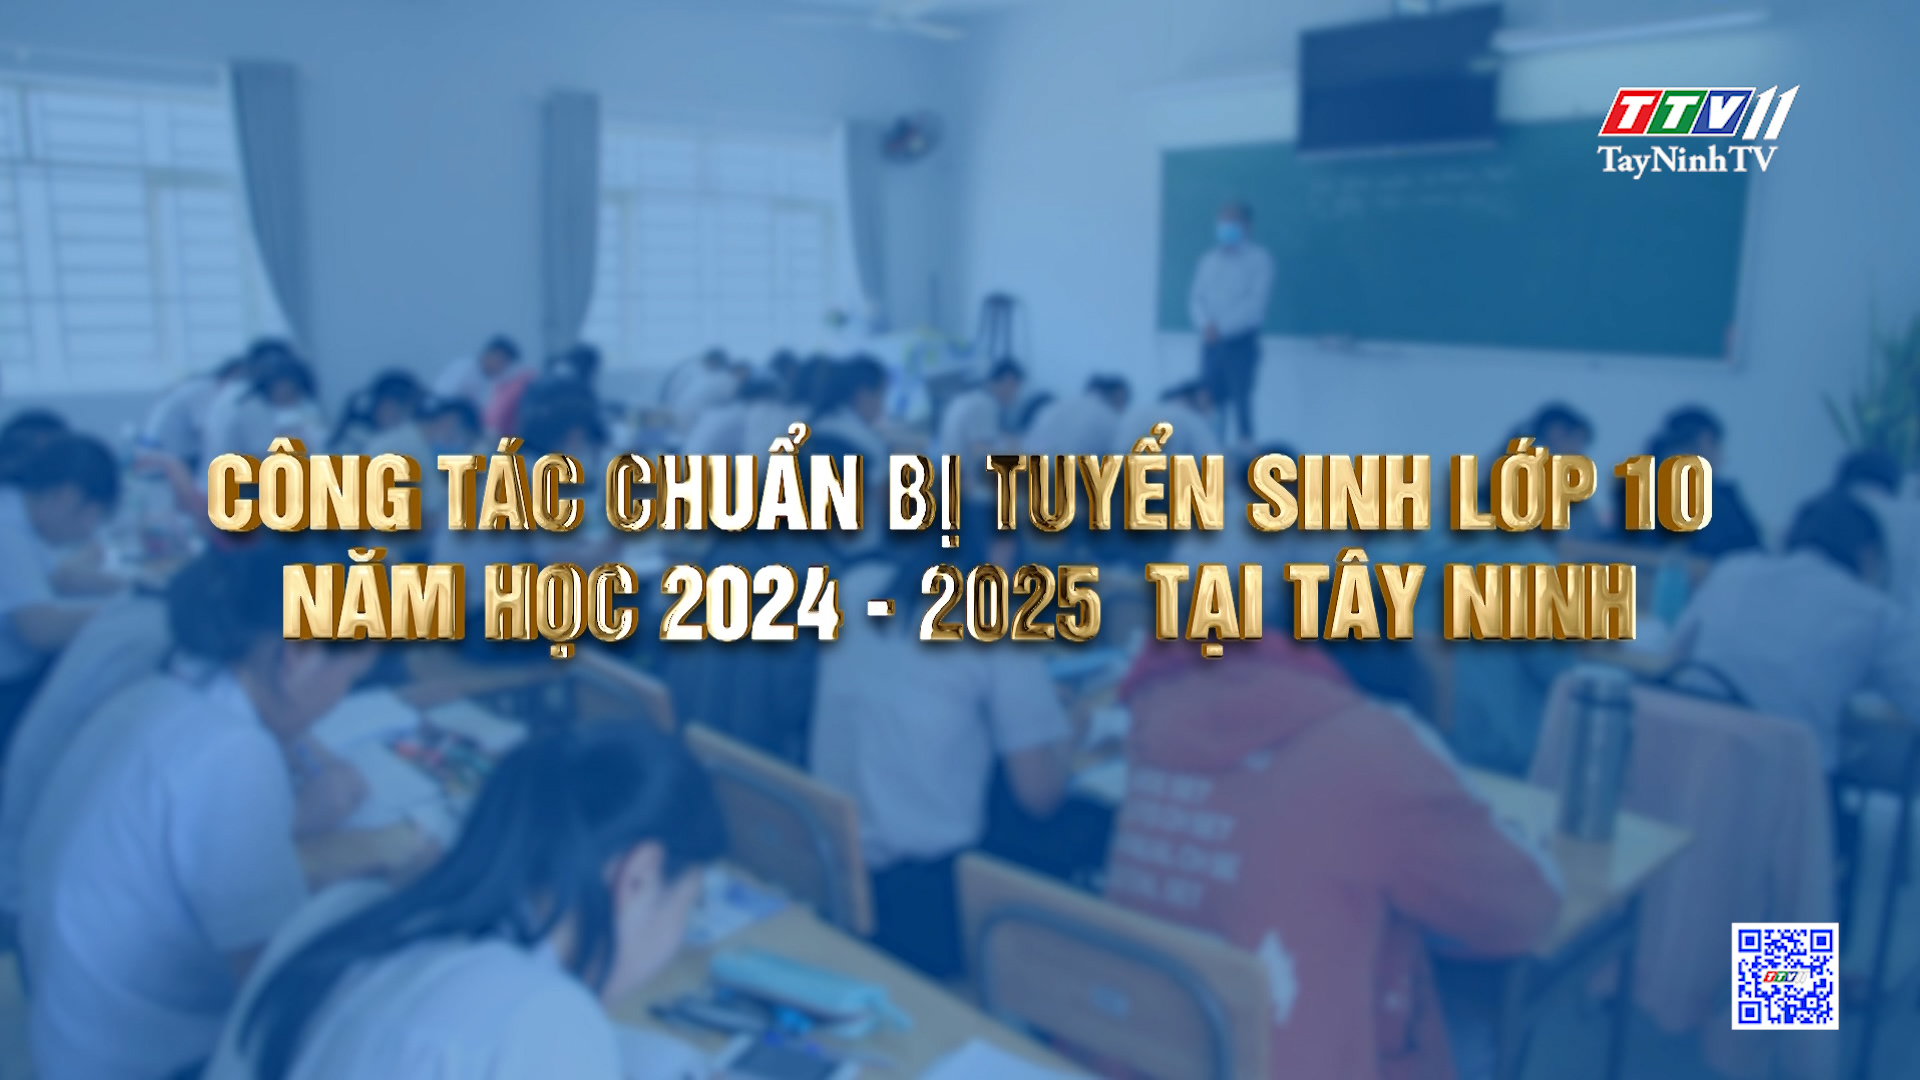 Công tác chuẩn bị tuyển sinh lớp 10 năm học 2024 - 2025  tại Tây Ninh | Tiếng nói cử tri | TayNinhTV